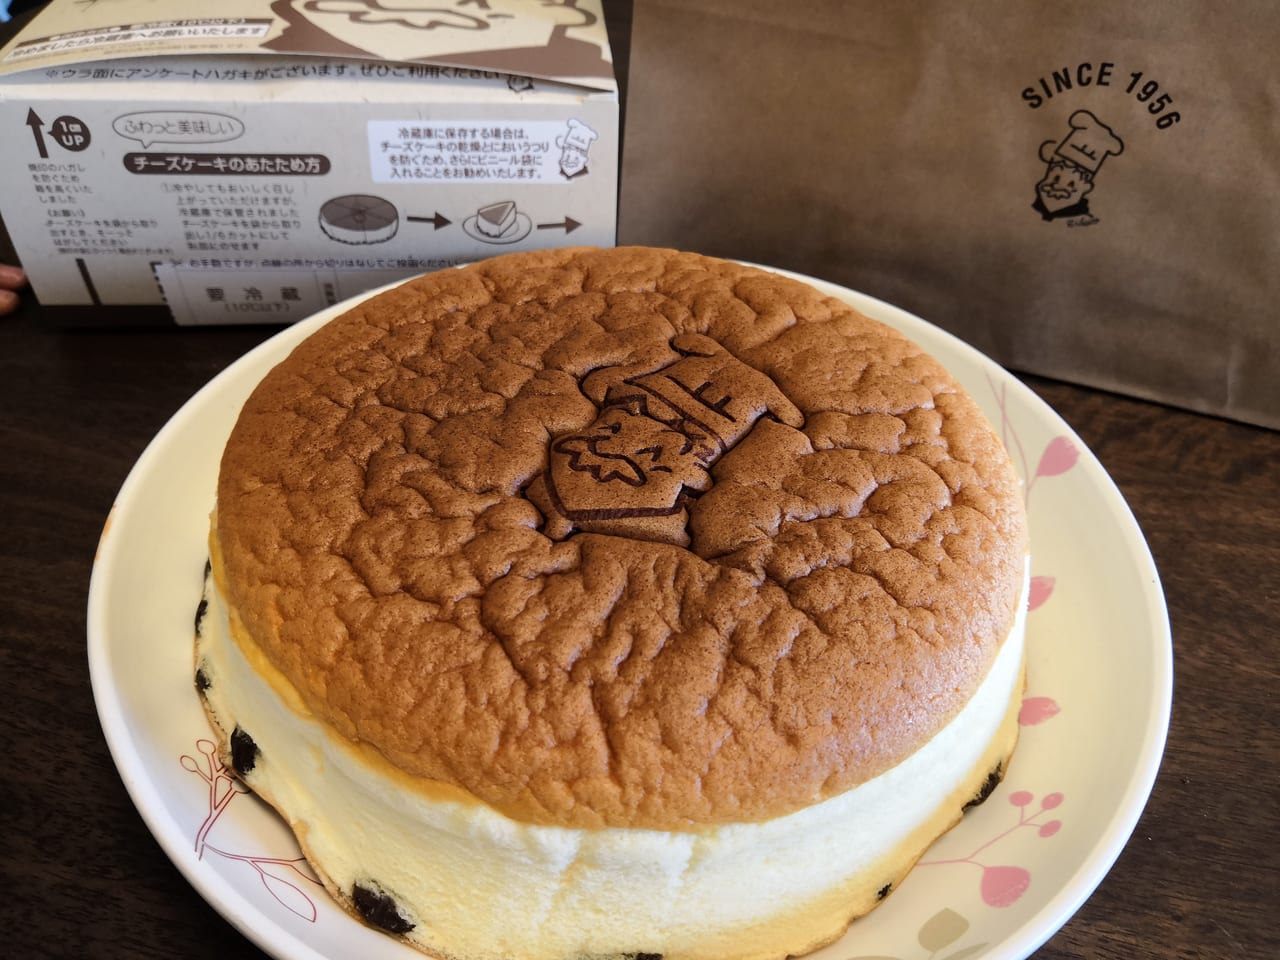 吹田市 エキスポシティ初出店 あの大人気のチーズケーキがエキスポで買えちゃいますよ 号外net 吹田